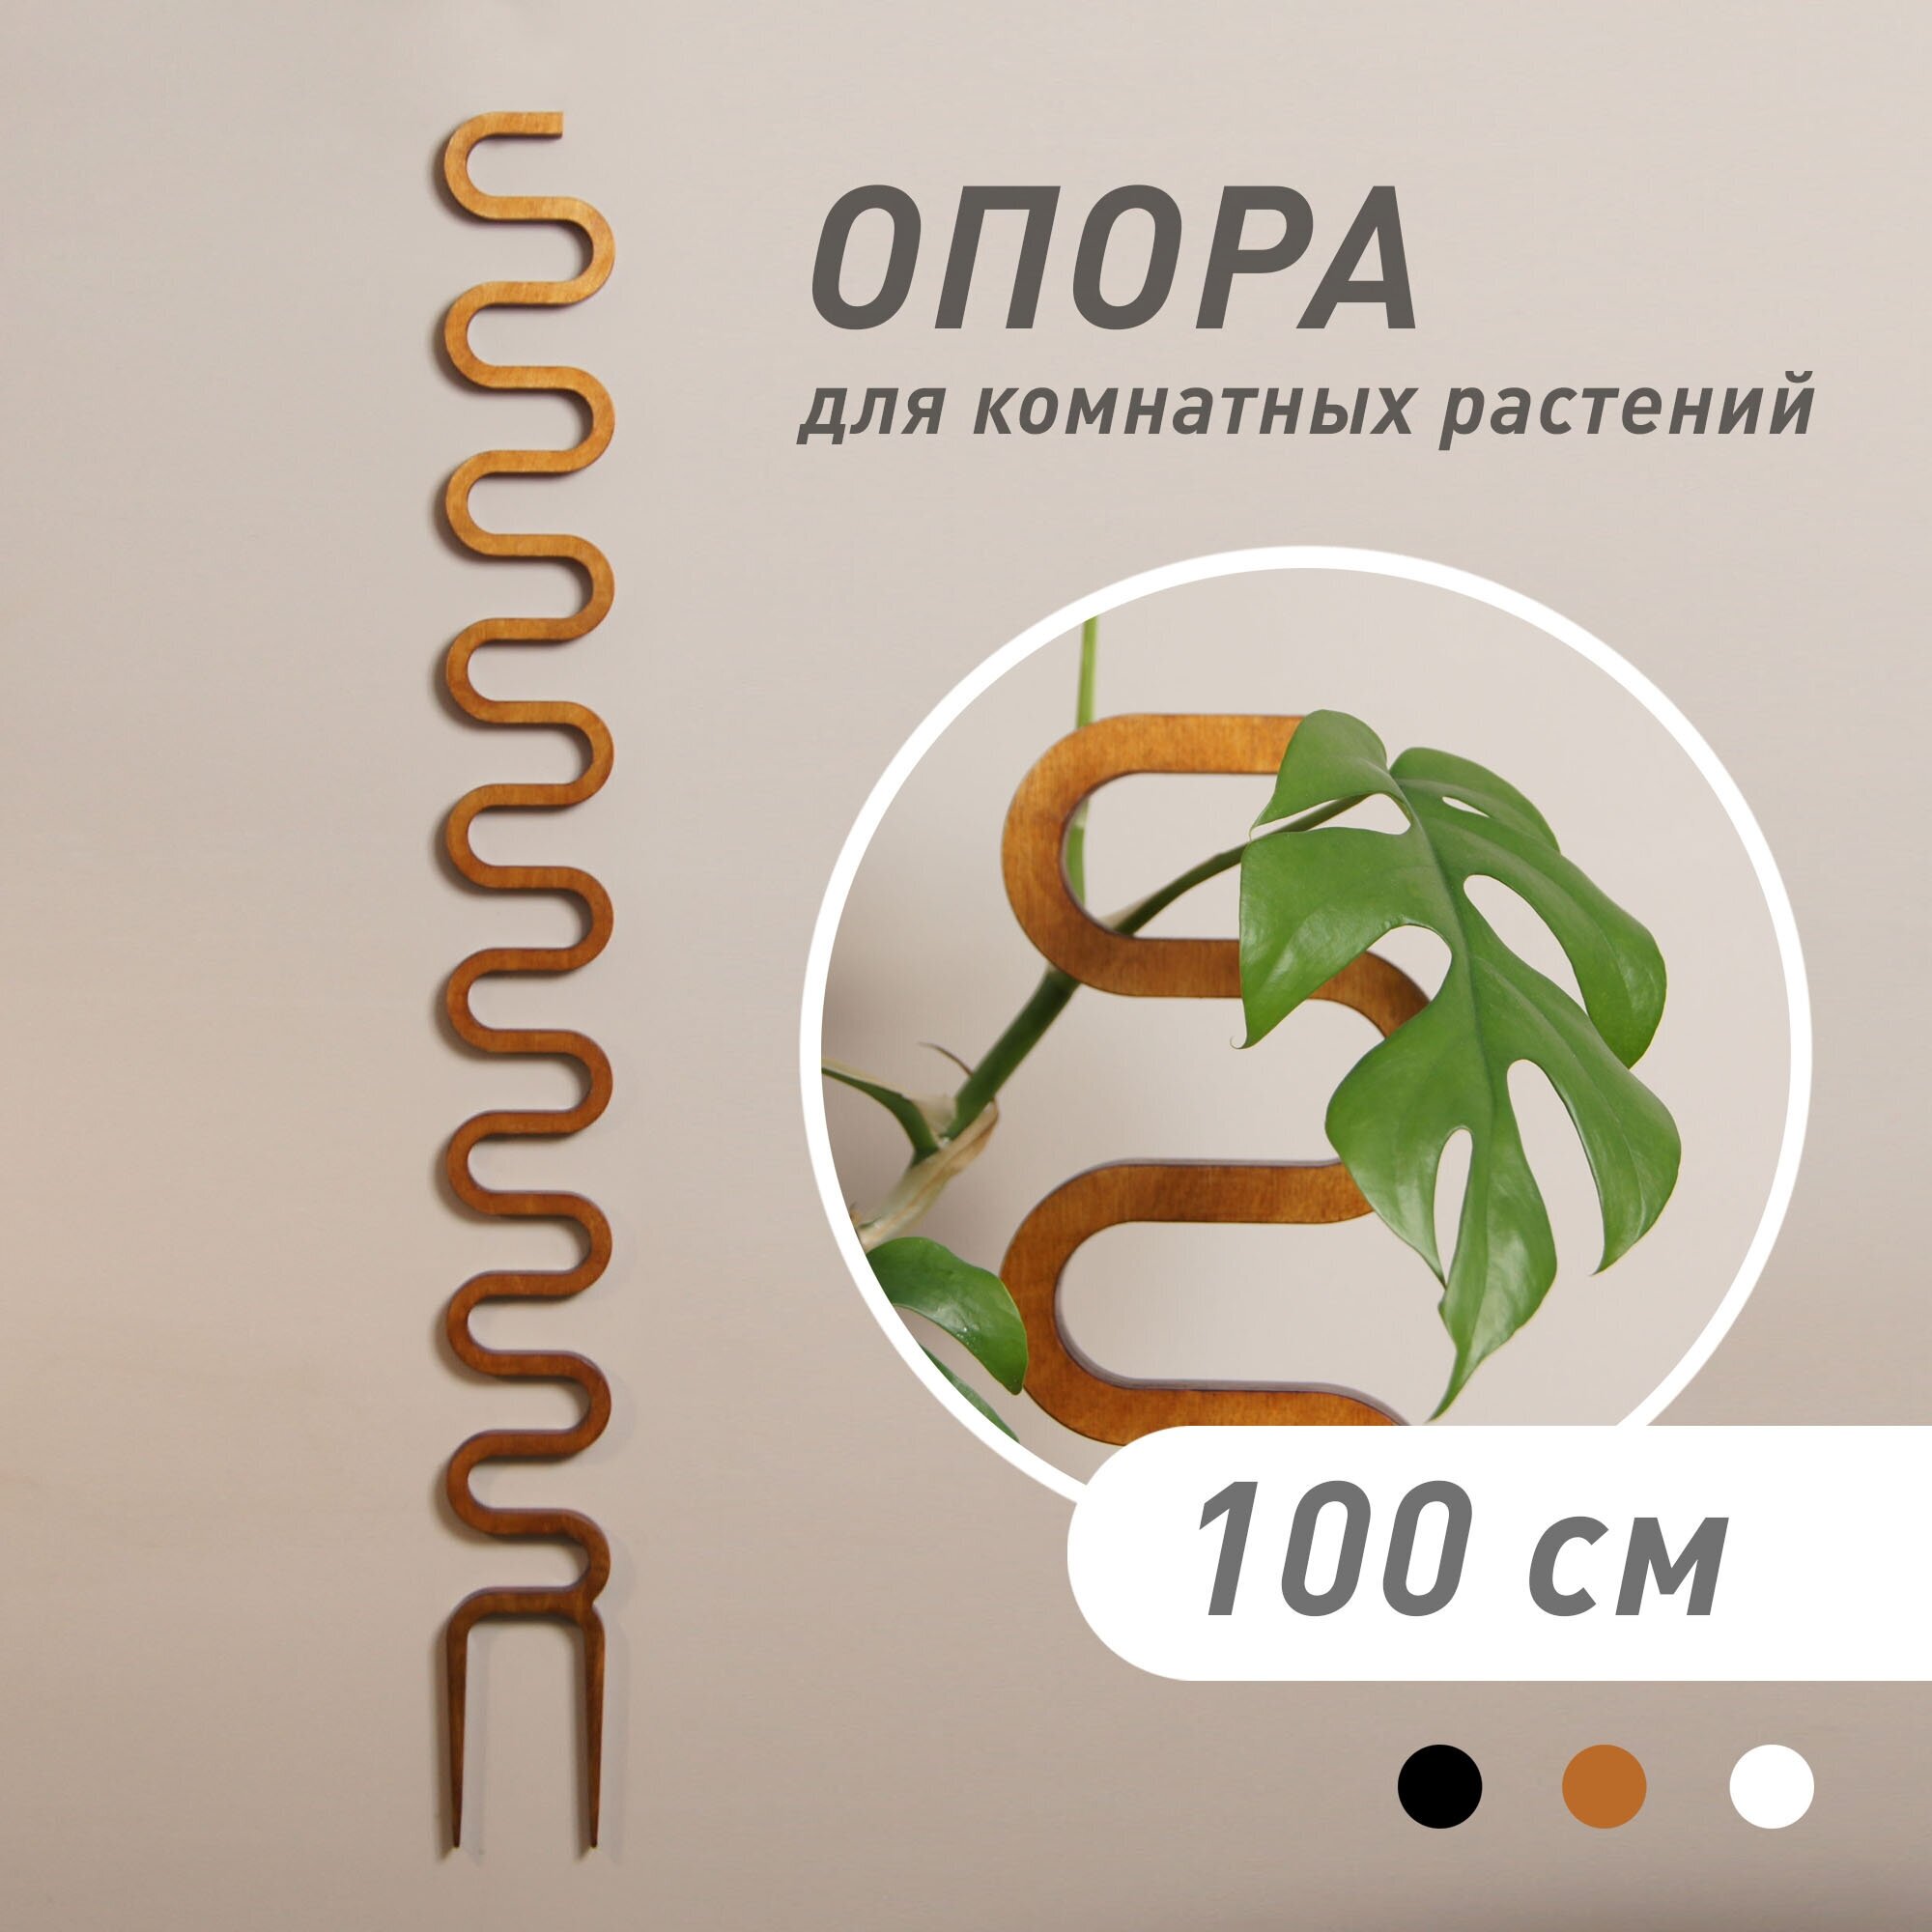 Опора для домашних растений "COBRA", светло-коричневая, высота 100 см